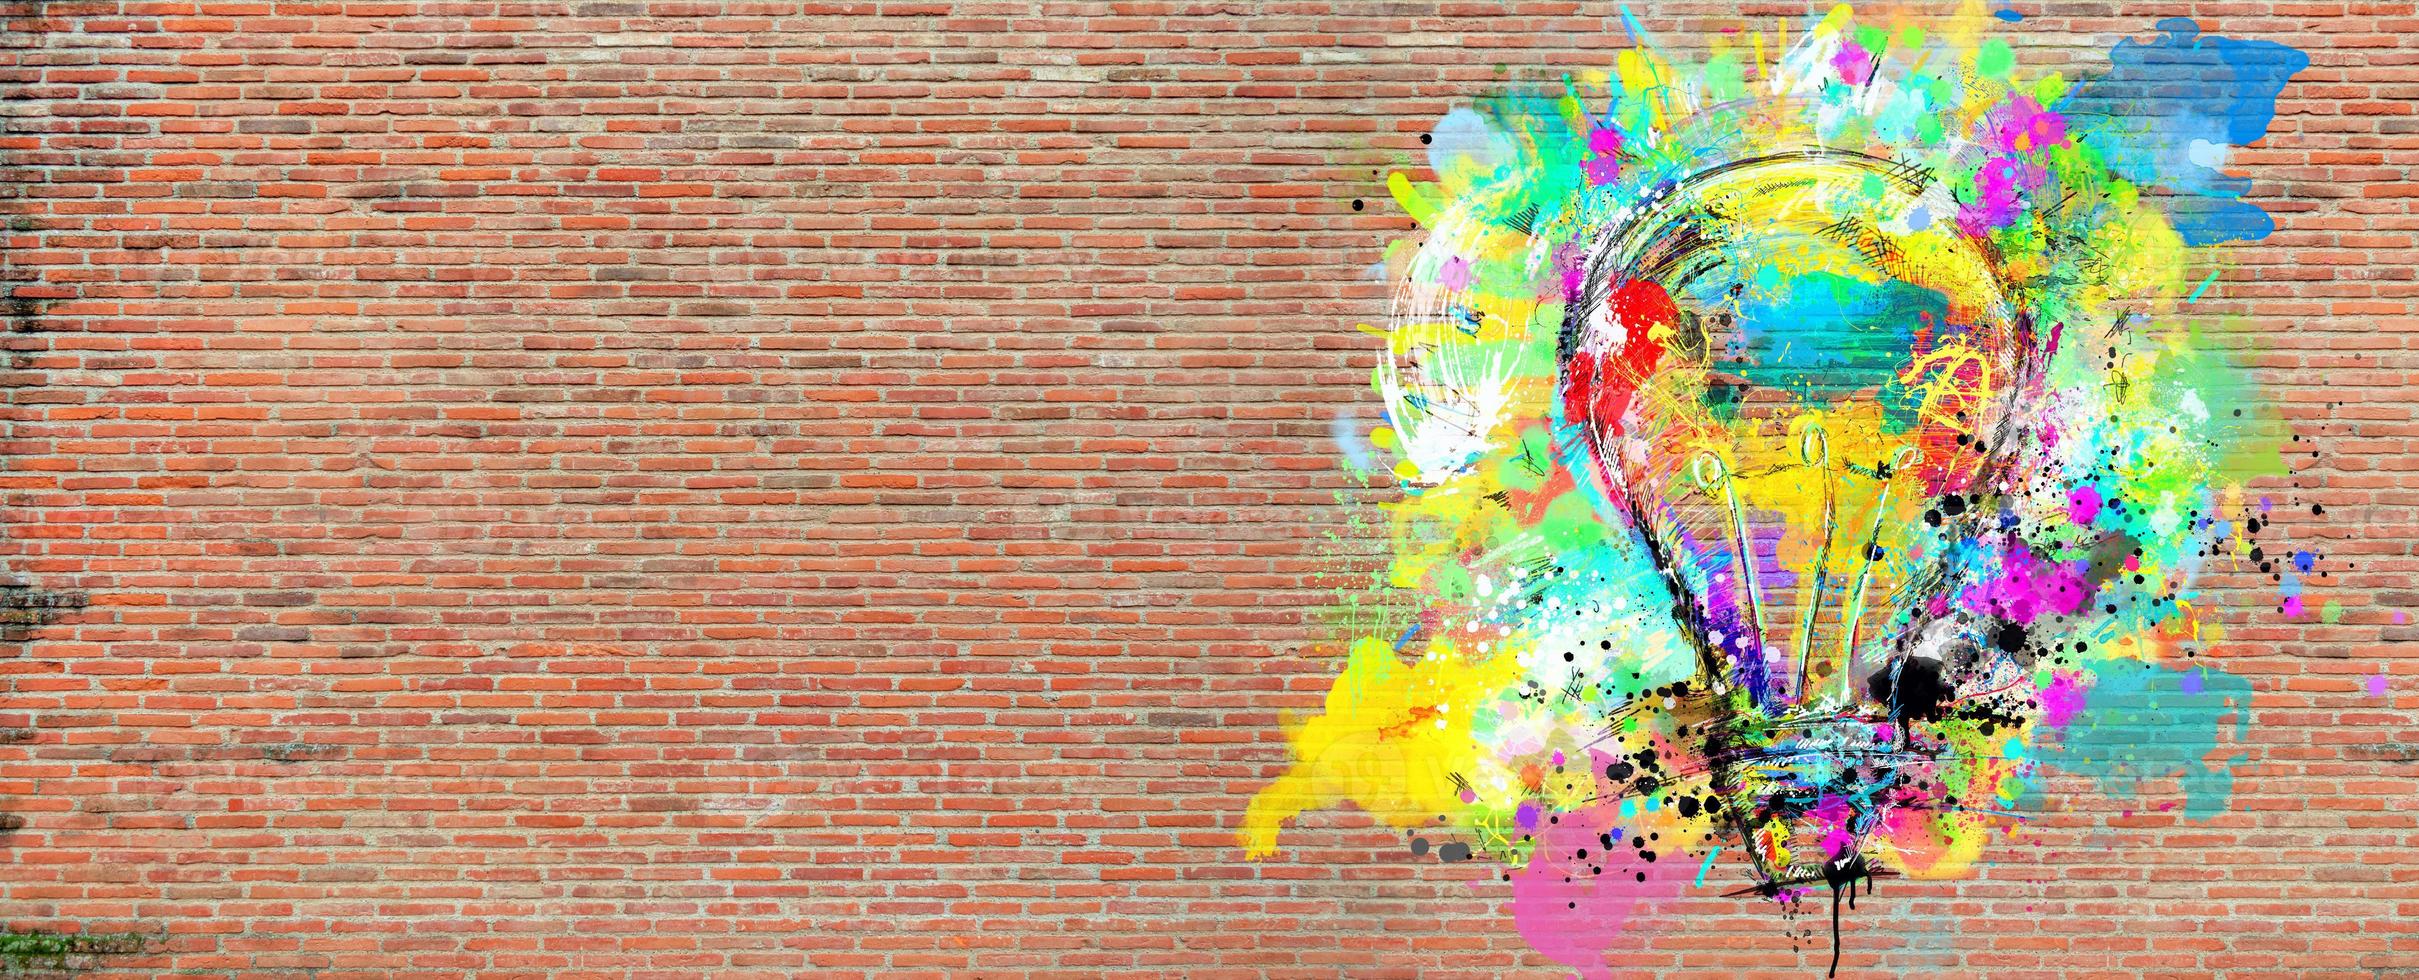 groß stilisiert Licht Birne auf ein groß Mauer von Ziegel gezeichnet mit spritzt von farbig malen. Konzept von Innovation und Kreativität Backstein foto